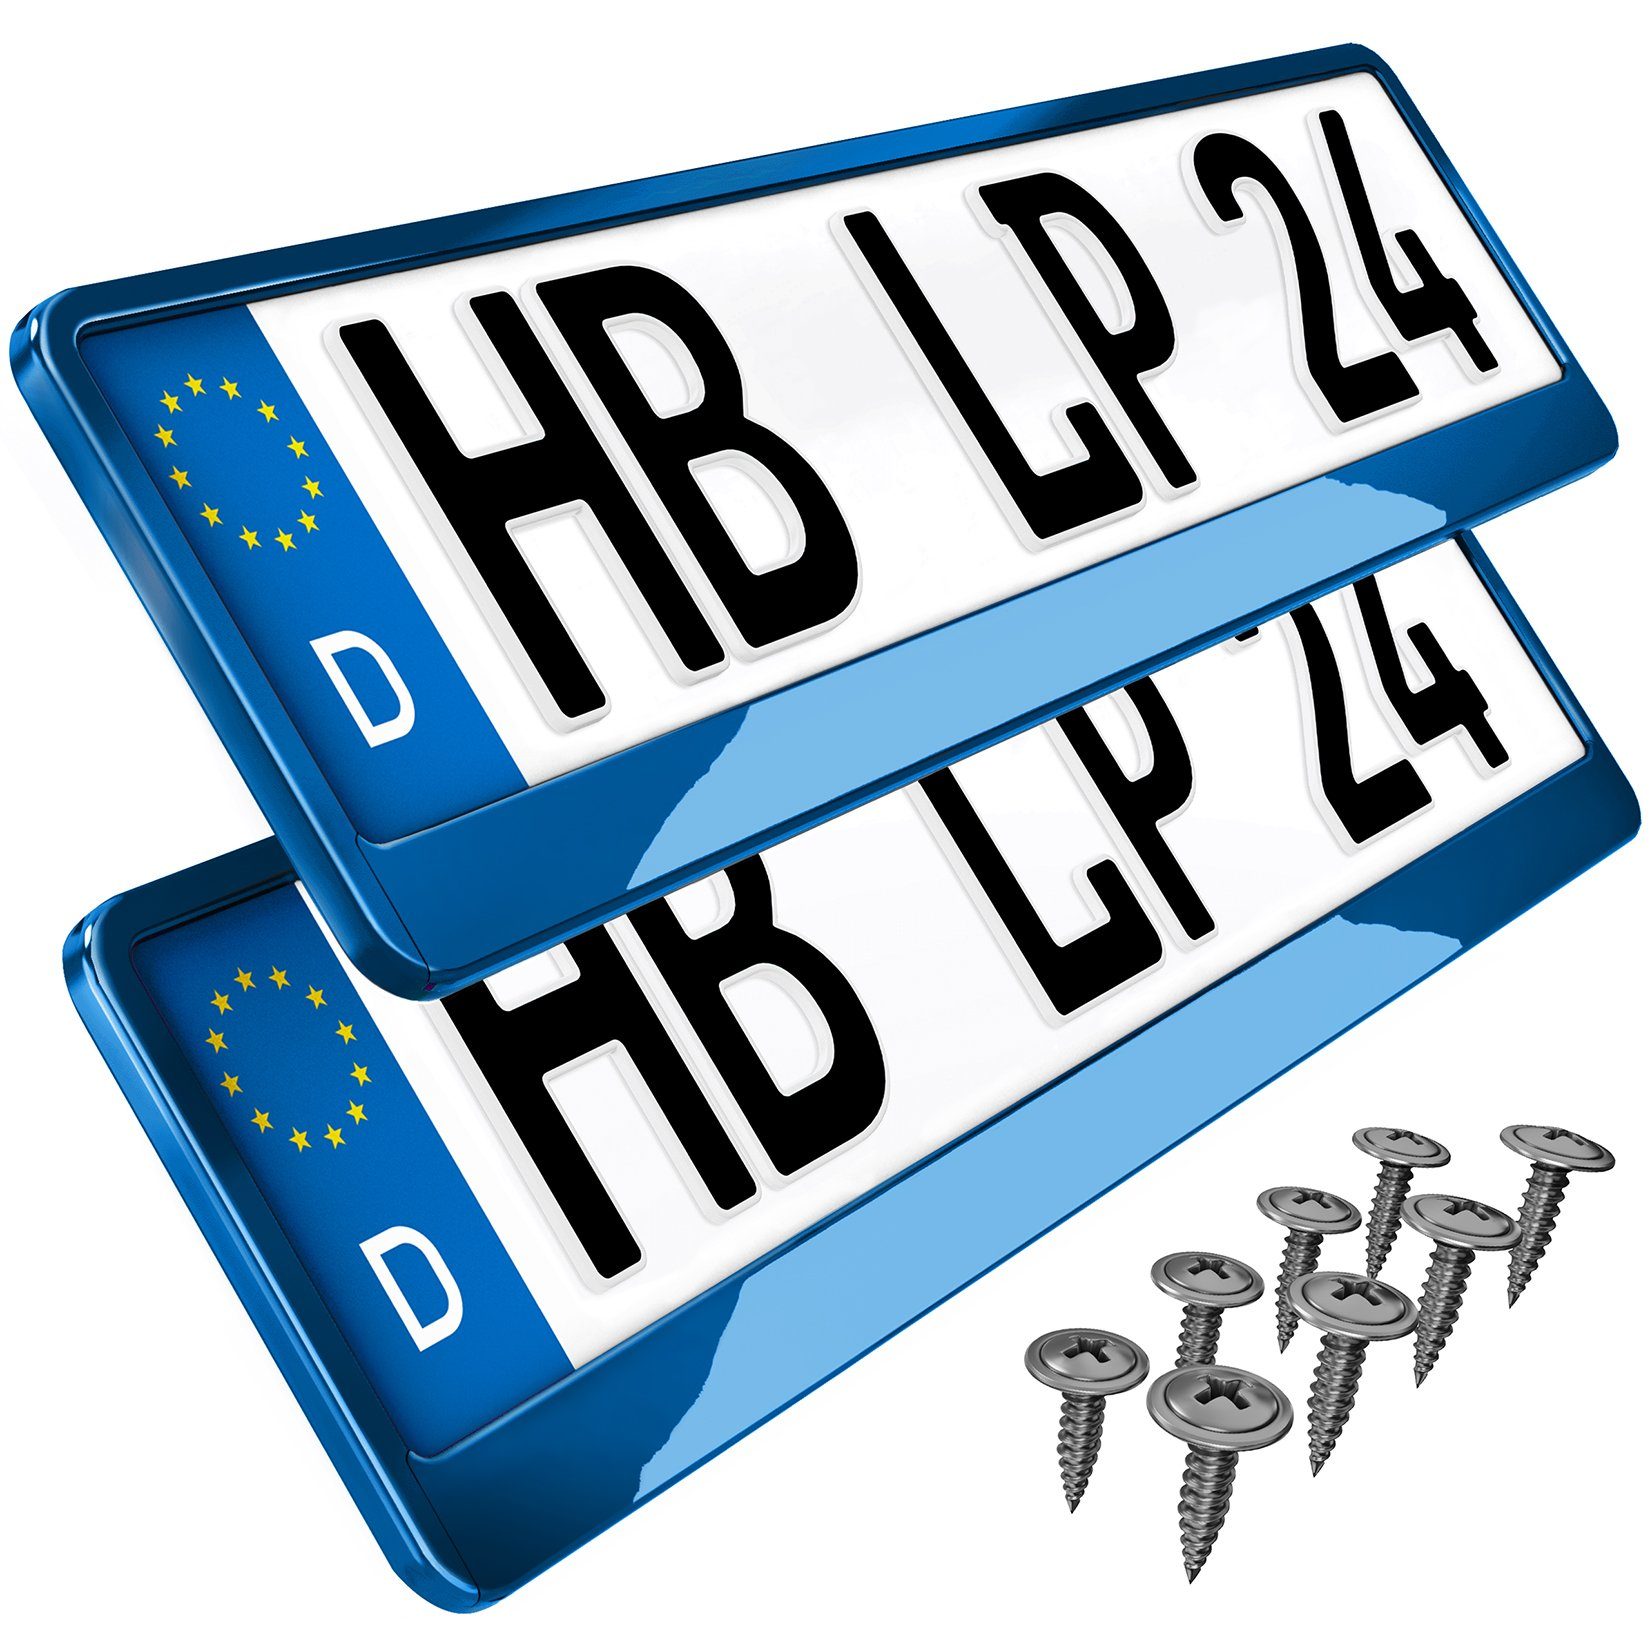 L & P Car Design Kennzeichenhalter für Auo in Blau Hochglanz  Kennzeichenhalterung Halter Nummernschild, (2 Stück)